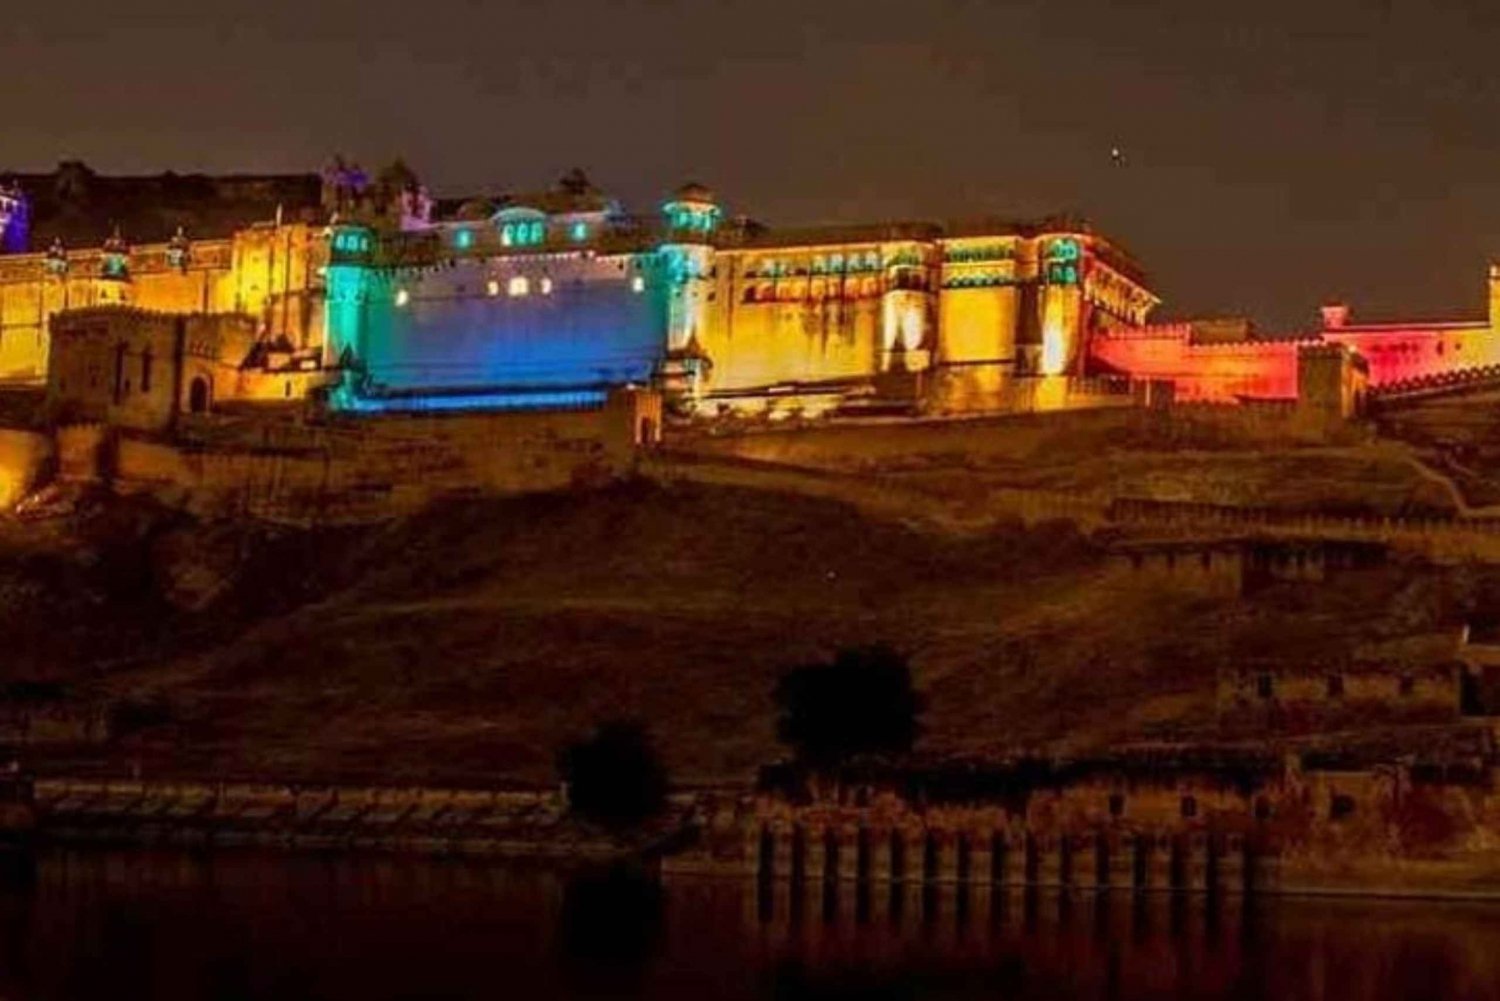 Jaipur: Spettacolo di luci e suoni con cena al Forte di Amber